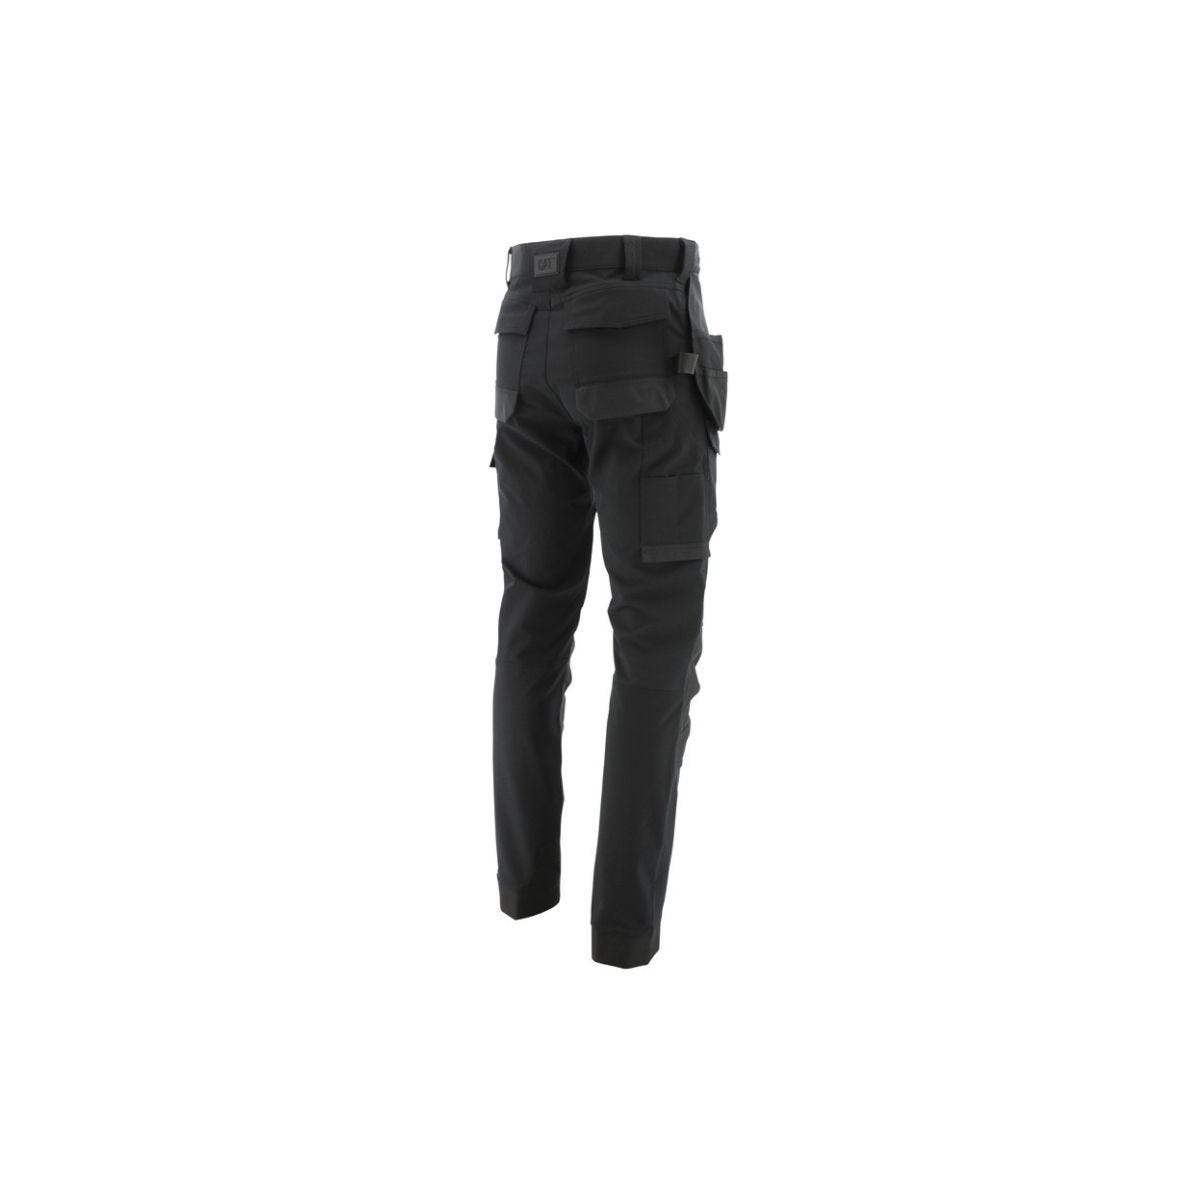 Pantalon de travail stretch technique noir - Caterpillar - Taille 40 1